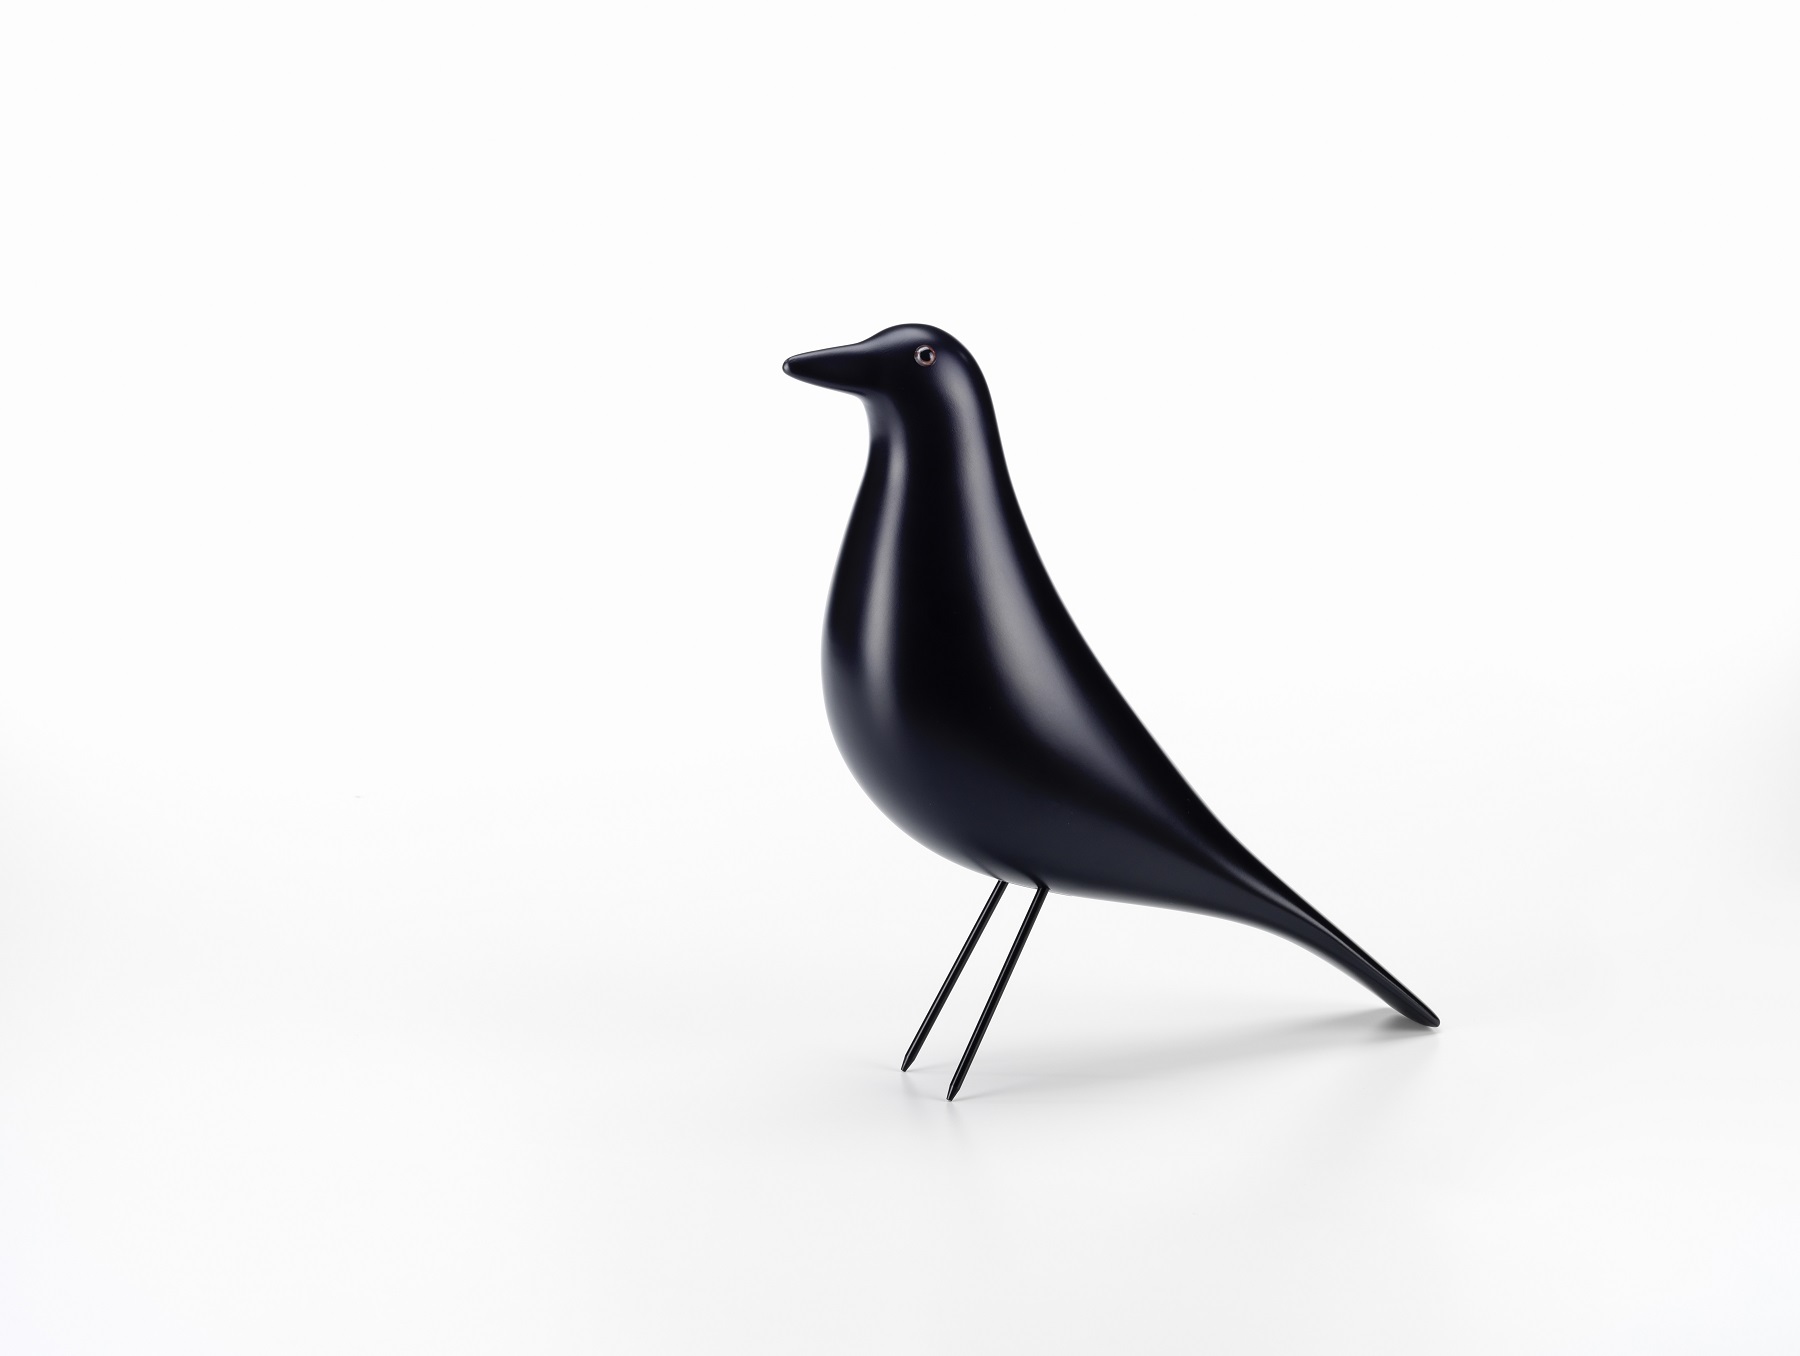 Designobjekt Vogel Eames House bird von vitra im LHL Onlineshop kaufen. Schwarz Vorderansicht